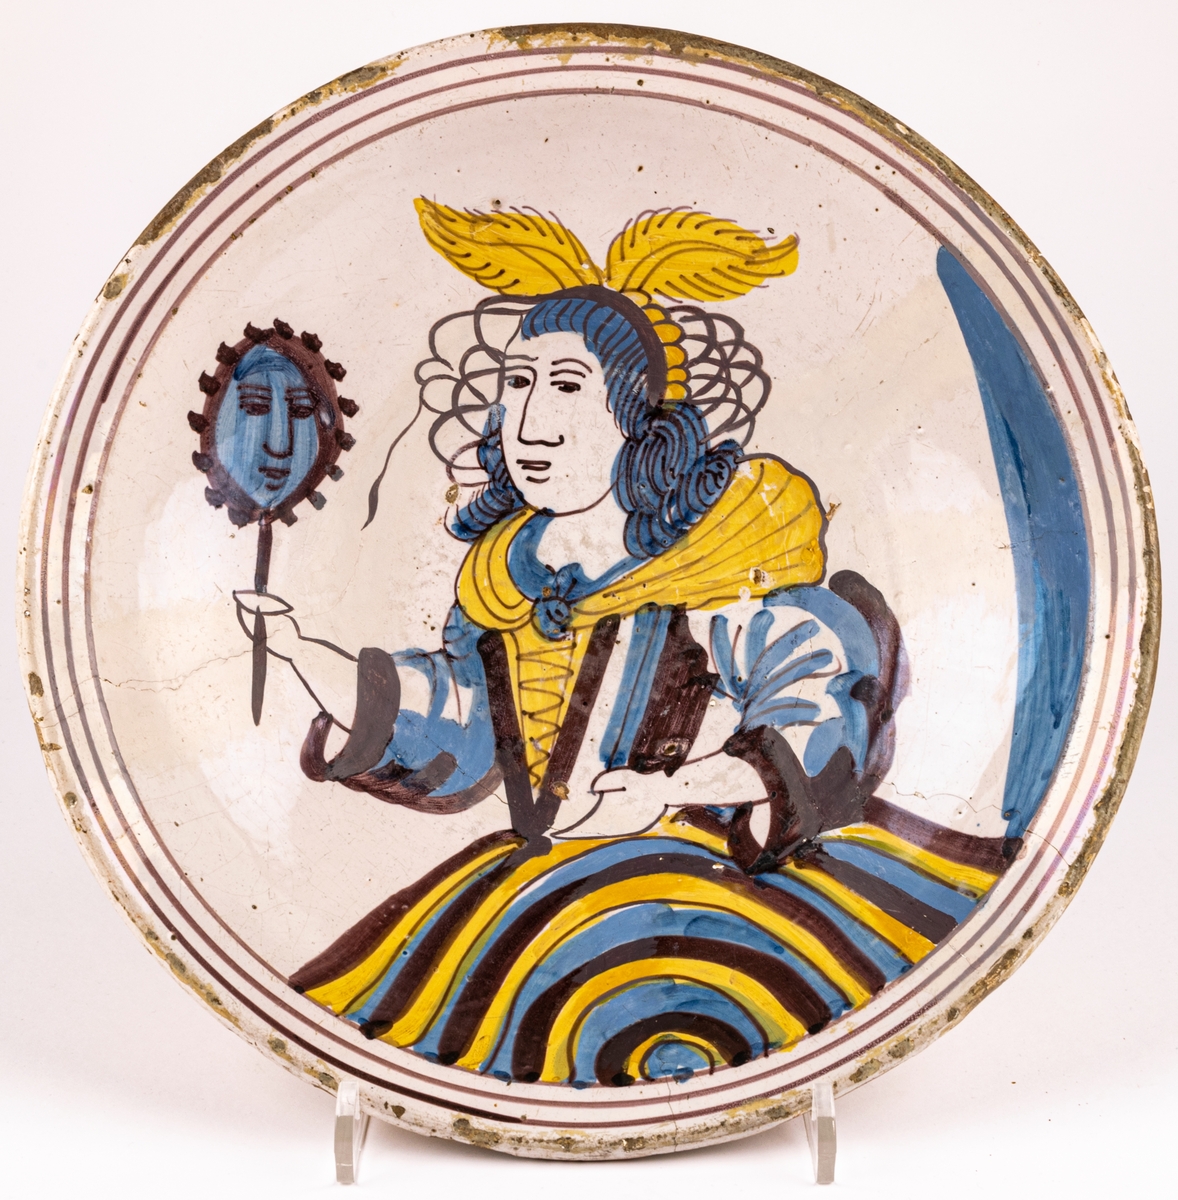 Keramikfat av ljusbrännande lergods med ljus tennglasyr som bottebfärg. Handdekorerad med kvinnogfigur som håller en spegel i högra handen. Kvinnofiguren har vingar på huvudet, snörliv och vid kjol. Figuren är i färgerna brun-lila, gult och blått.
Fatet är troligen från 1700-talet.
En spricka i fatet som löper genom en tredjedel, små naggar i kanten samt